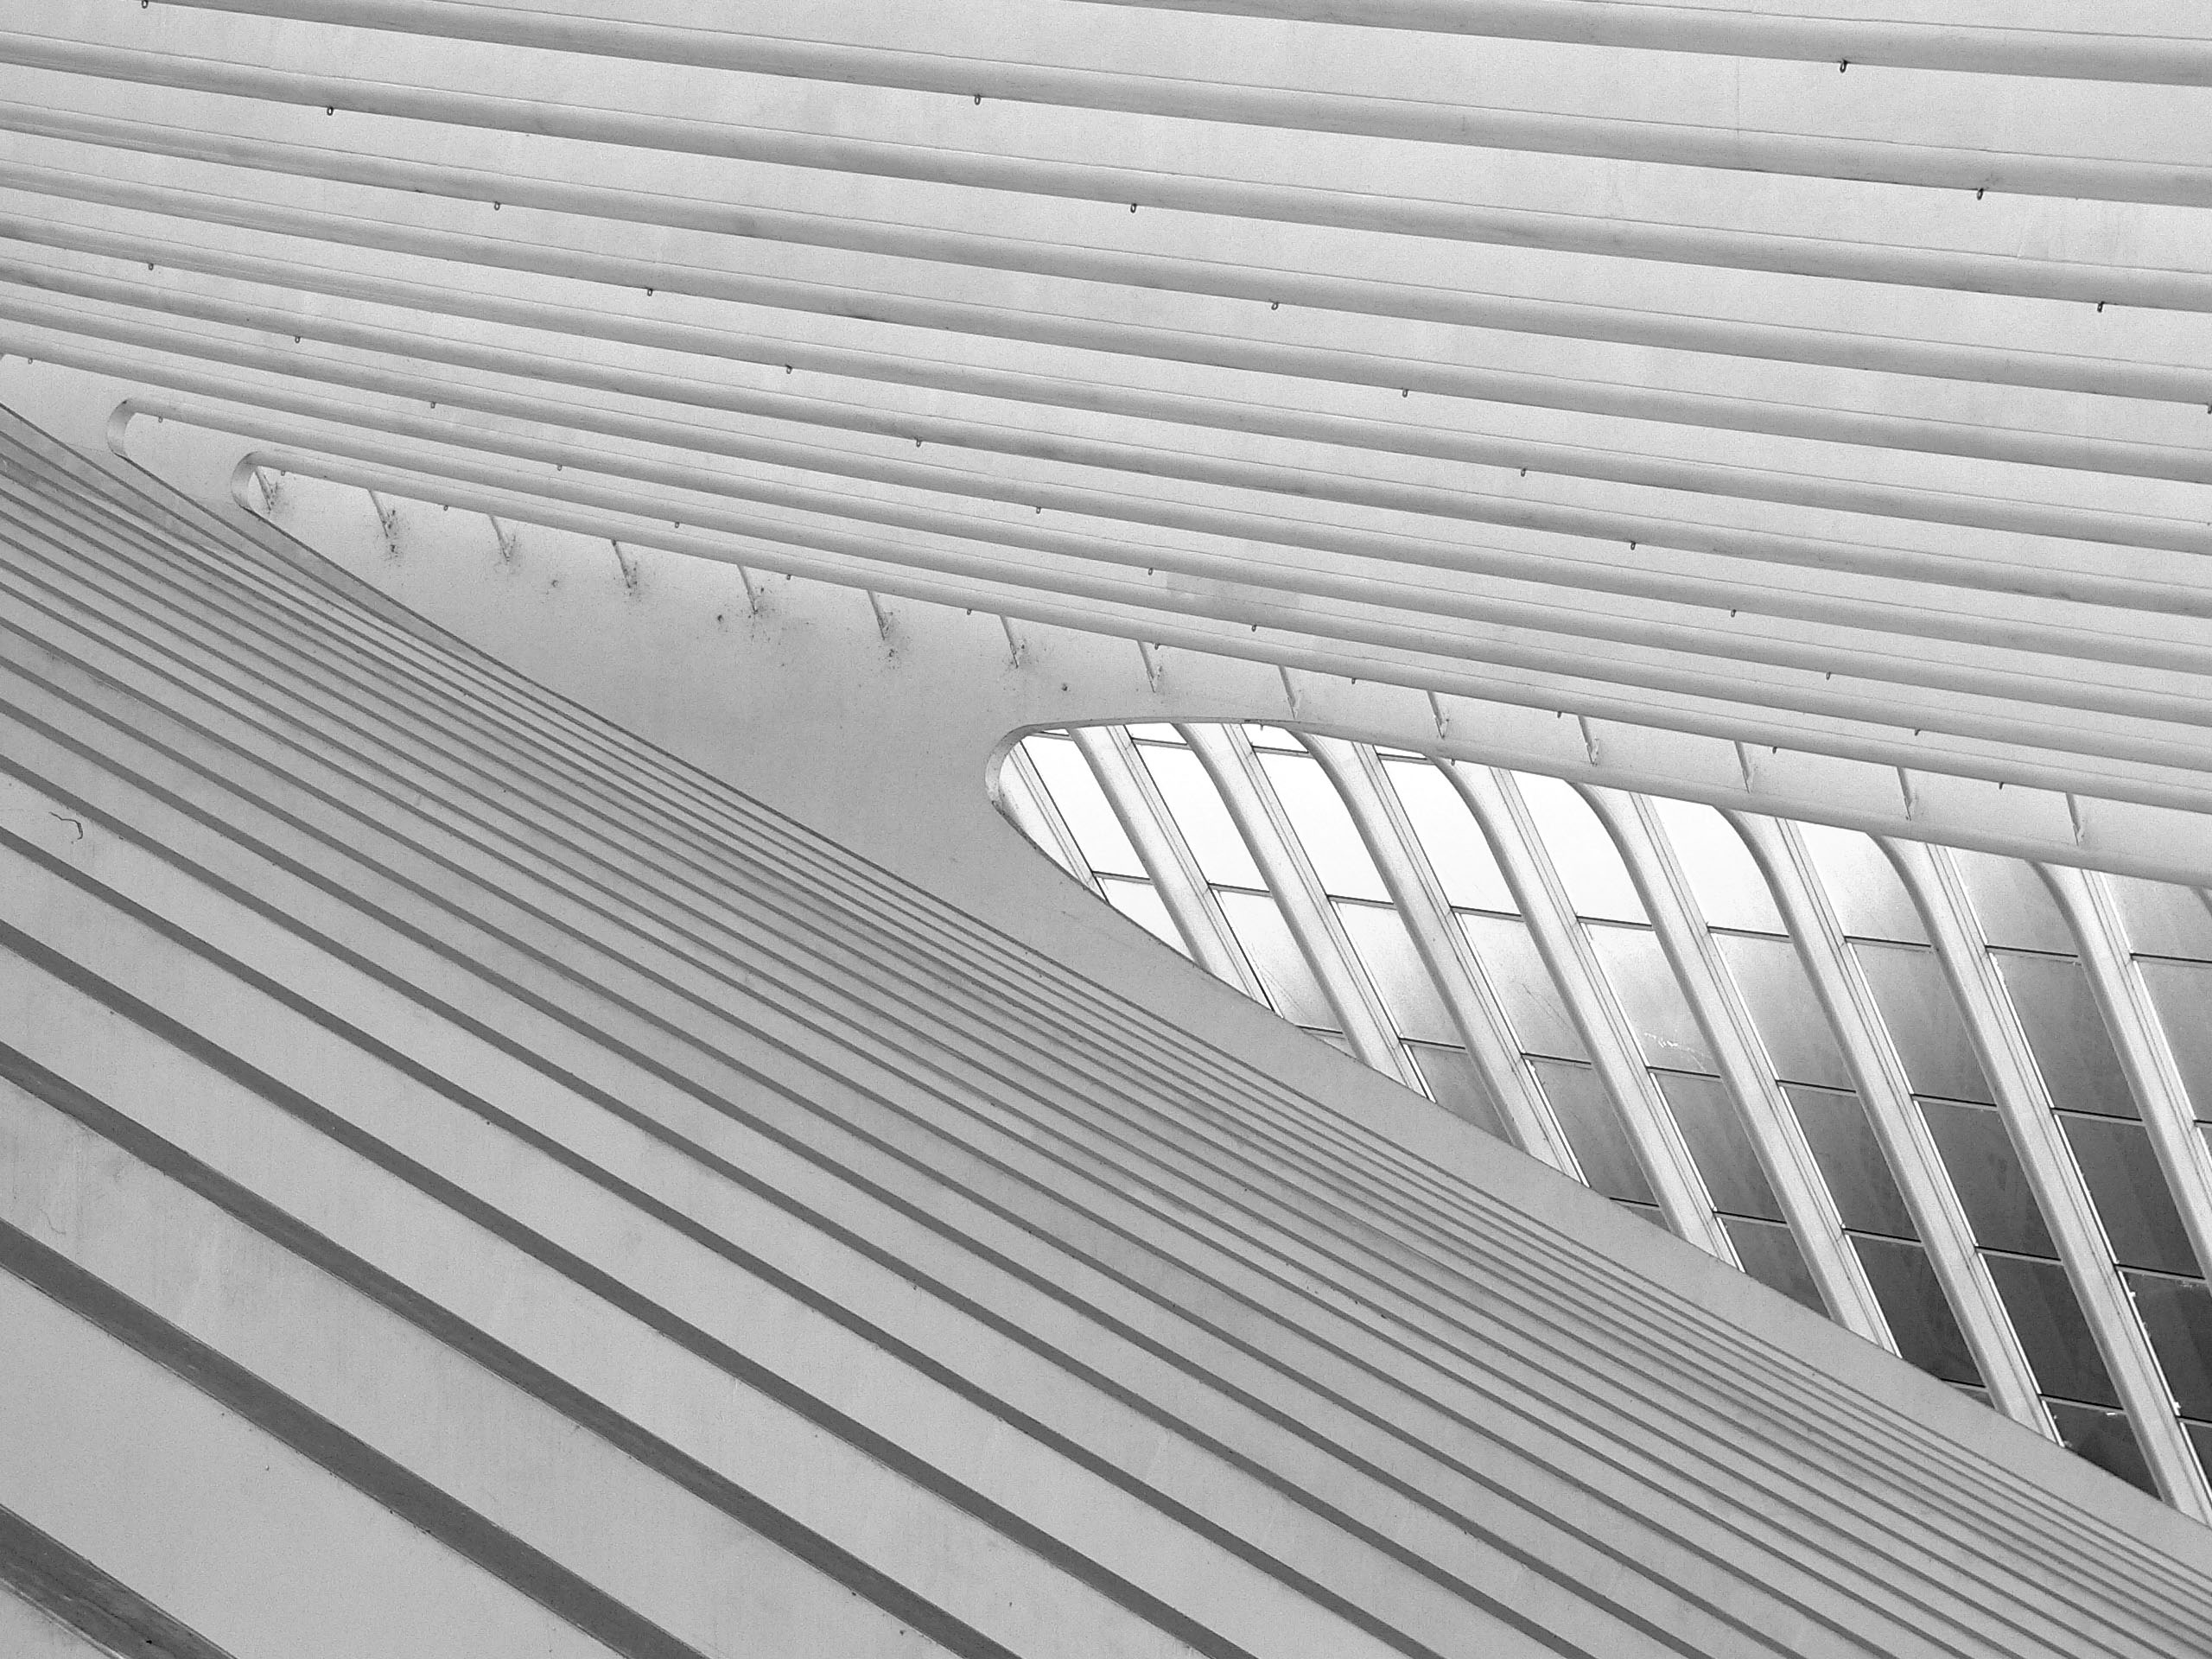 Calatravas Stil reicht bis in den letzten Winkel